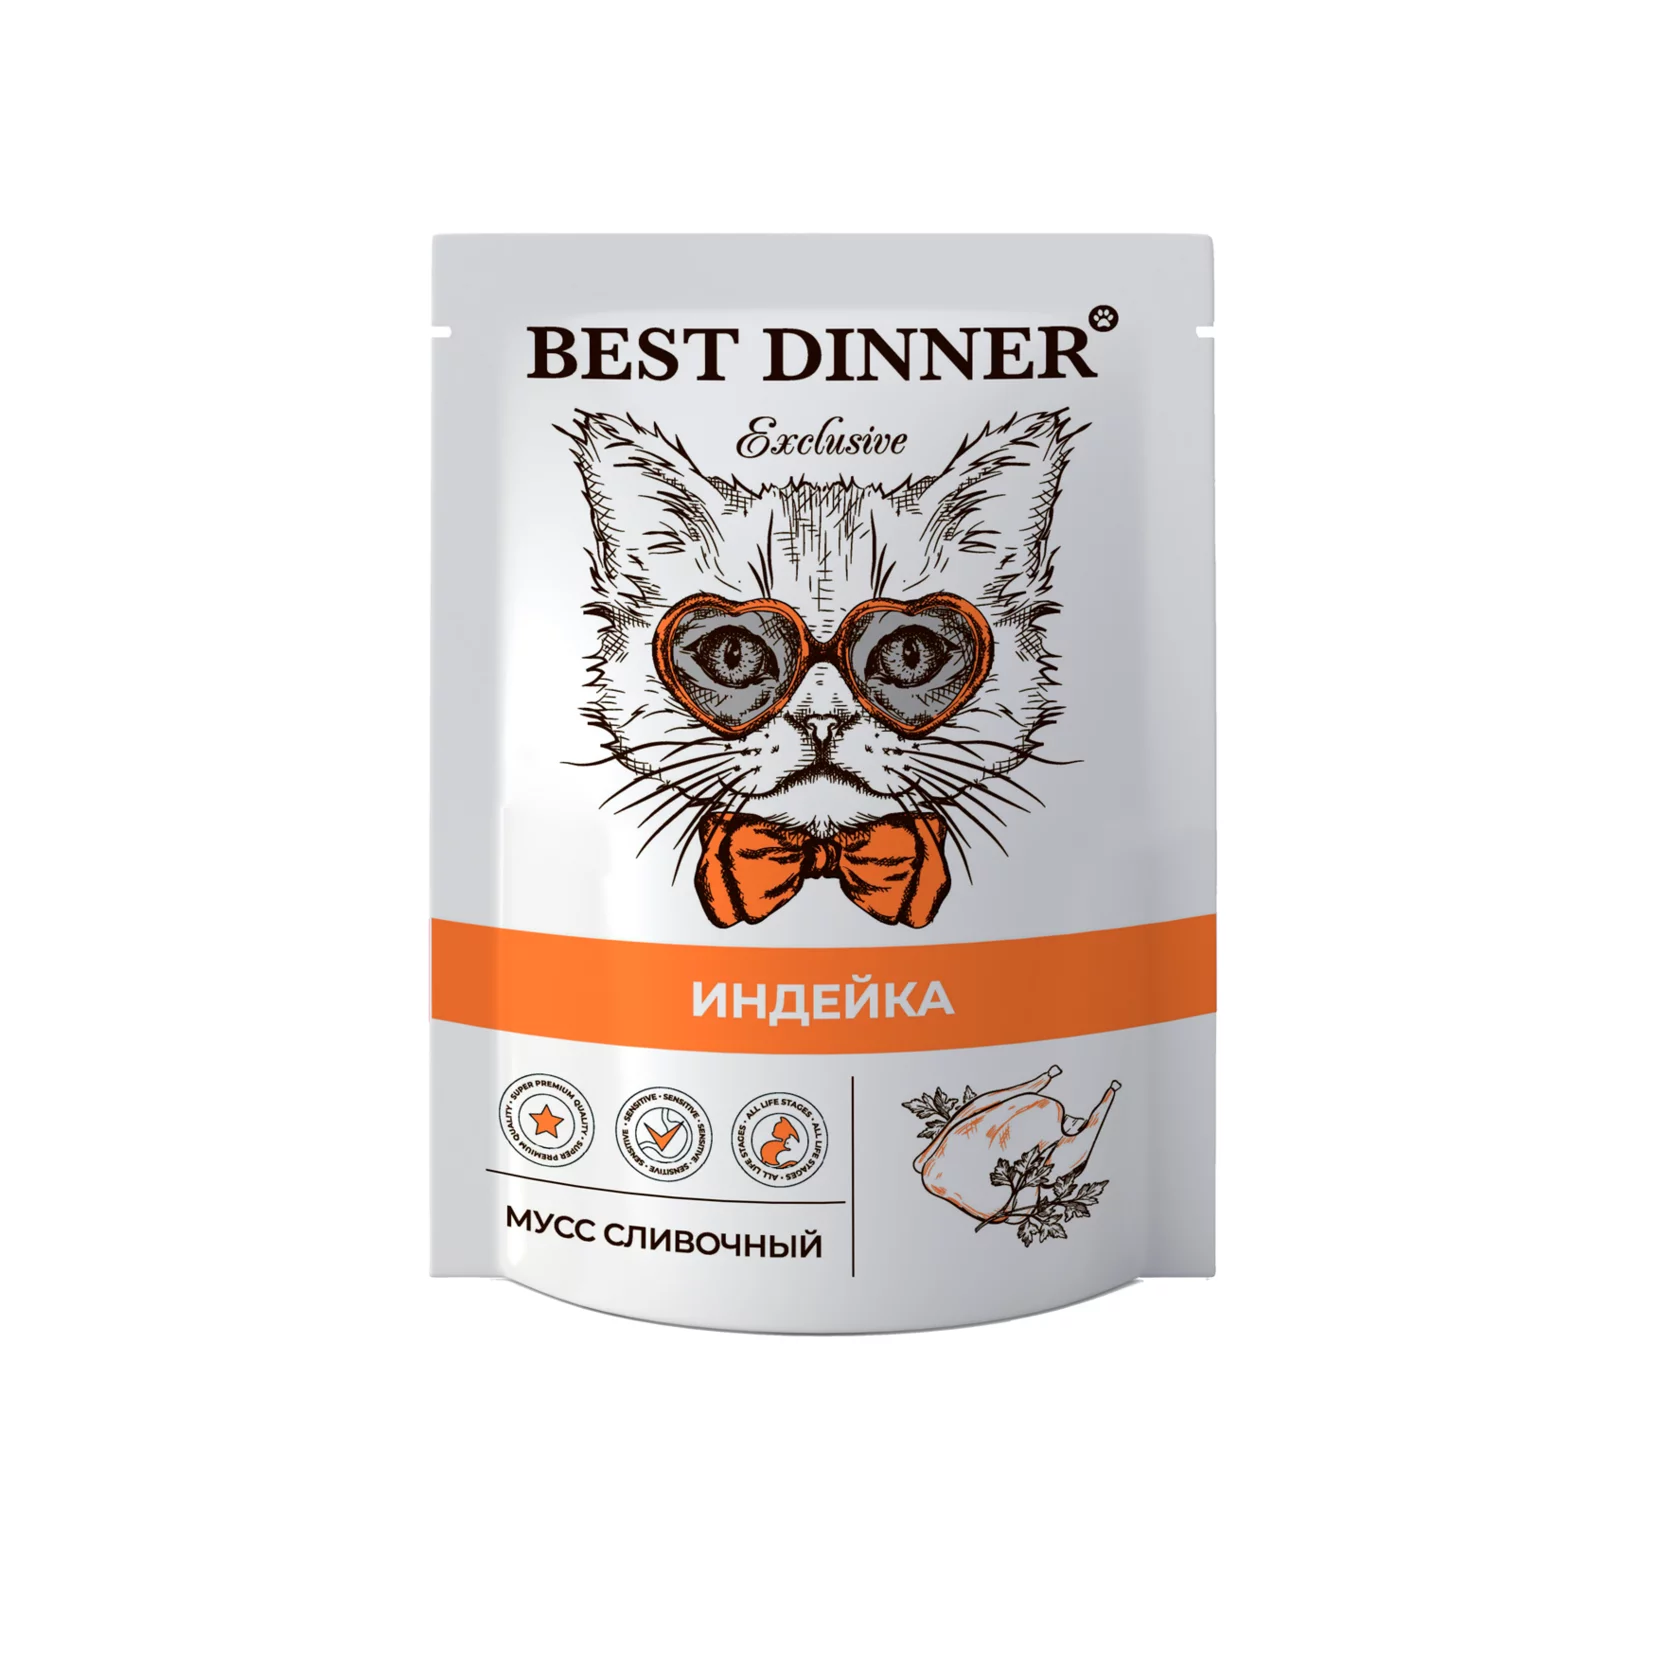 Пауч мусс сливочный для котят и взрослых кошек Best Dinner (Бест Диннер) Adult & Kitten, индейка, 85 г